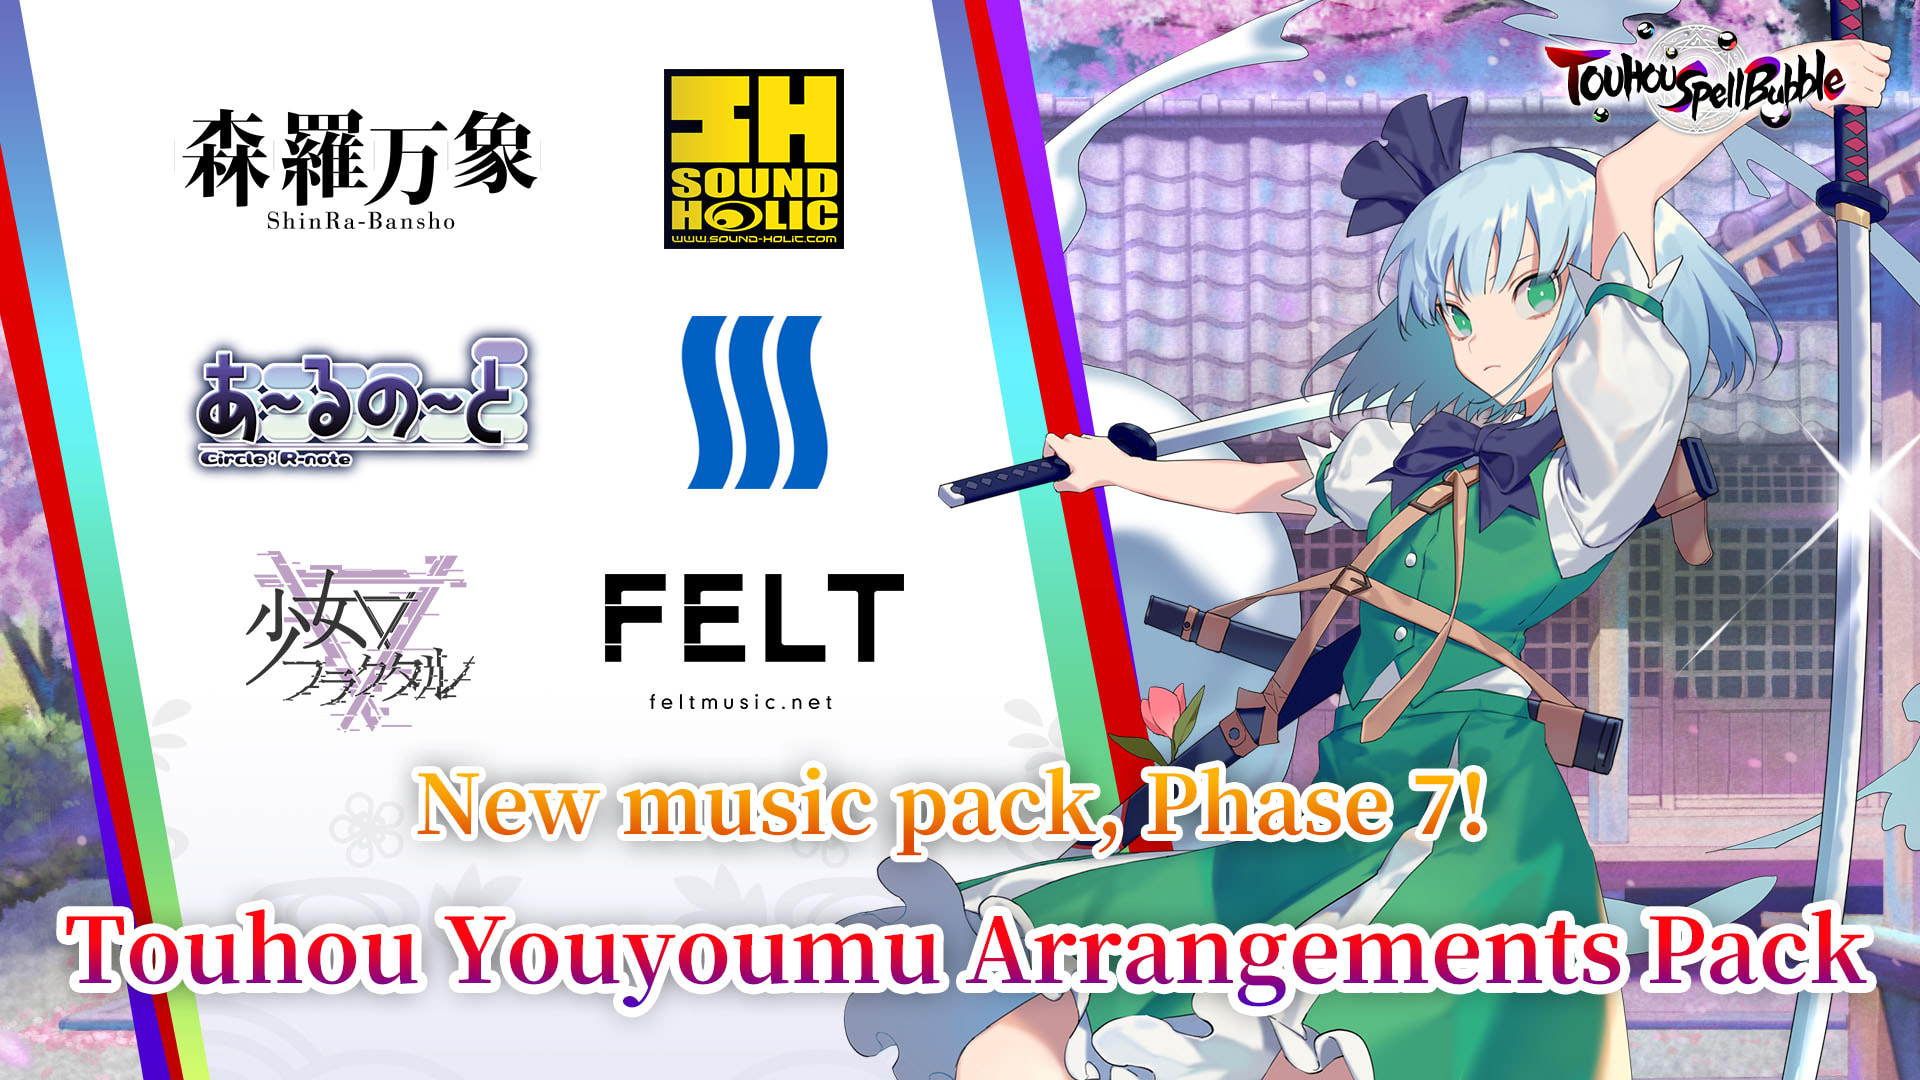 Touhou Youyoumu Arrangements Pack